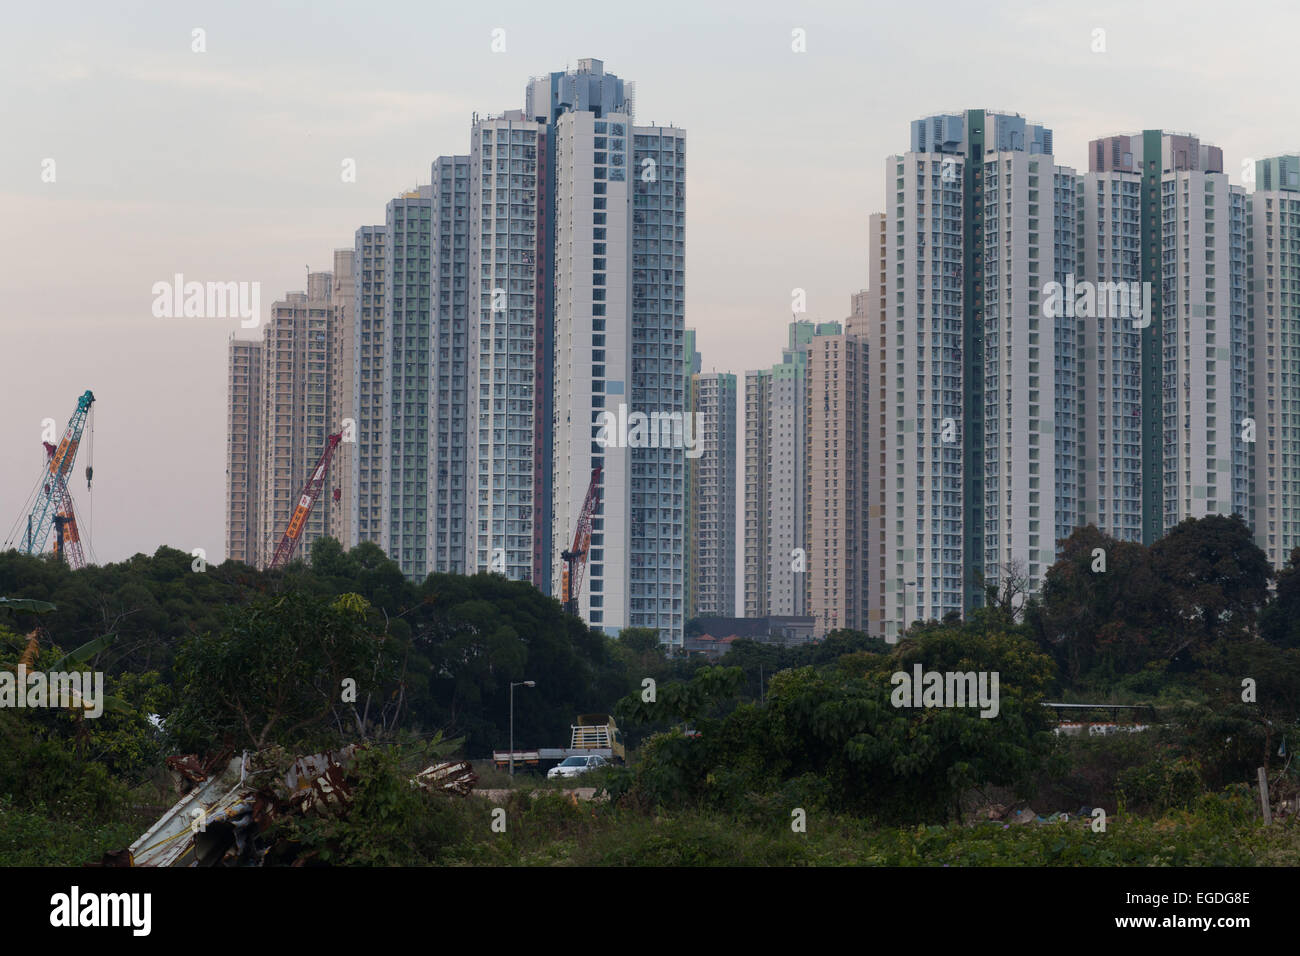 Tung Chung Stadt ist Teil von Hong Kong und ist eine riesige Ansammlung von hohen Hochhäusern. 7 Millionen Menschen leben auf 1.104 km Platz. Stockfoto